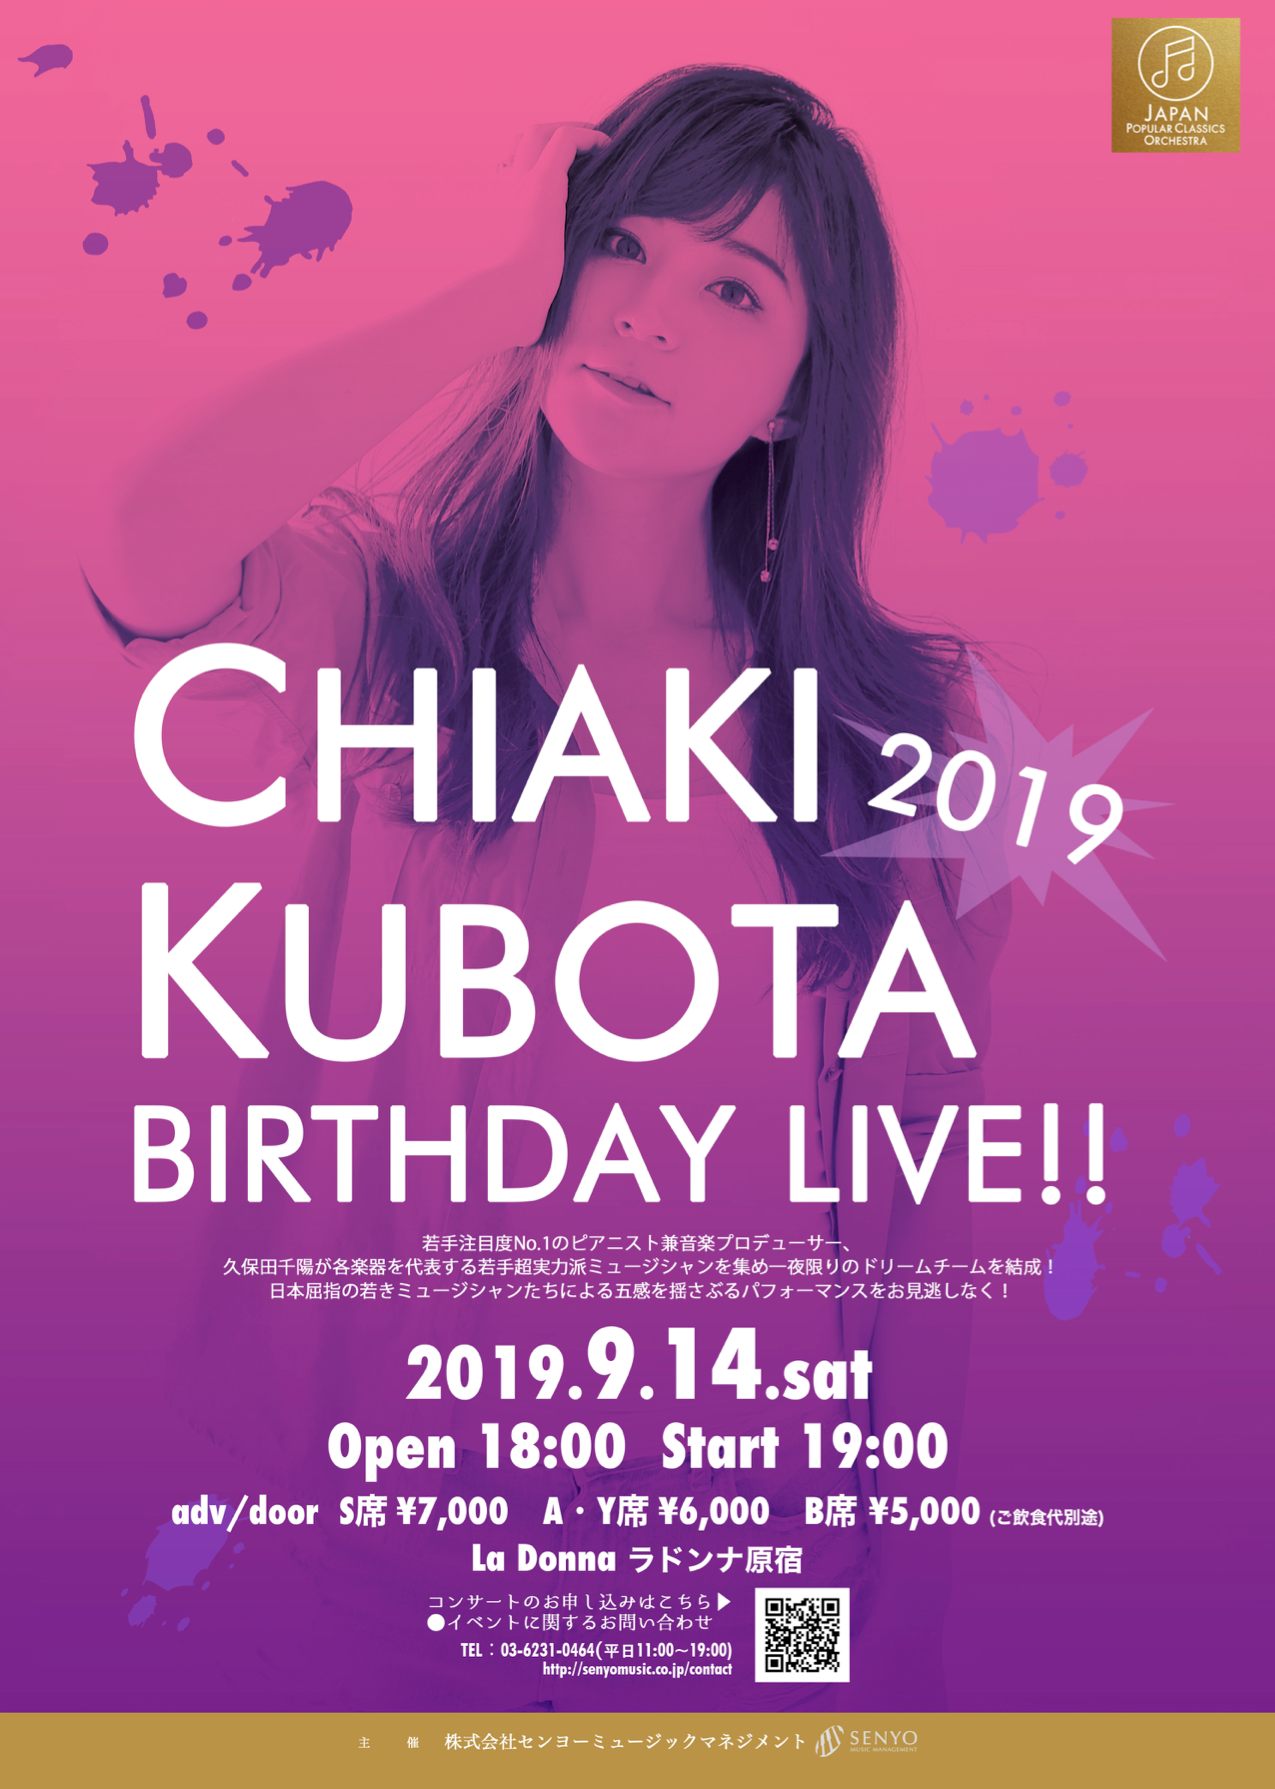 CHIAKI KUBOTA 2019 BIRTHDAY LIVE!!